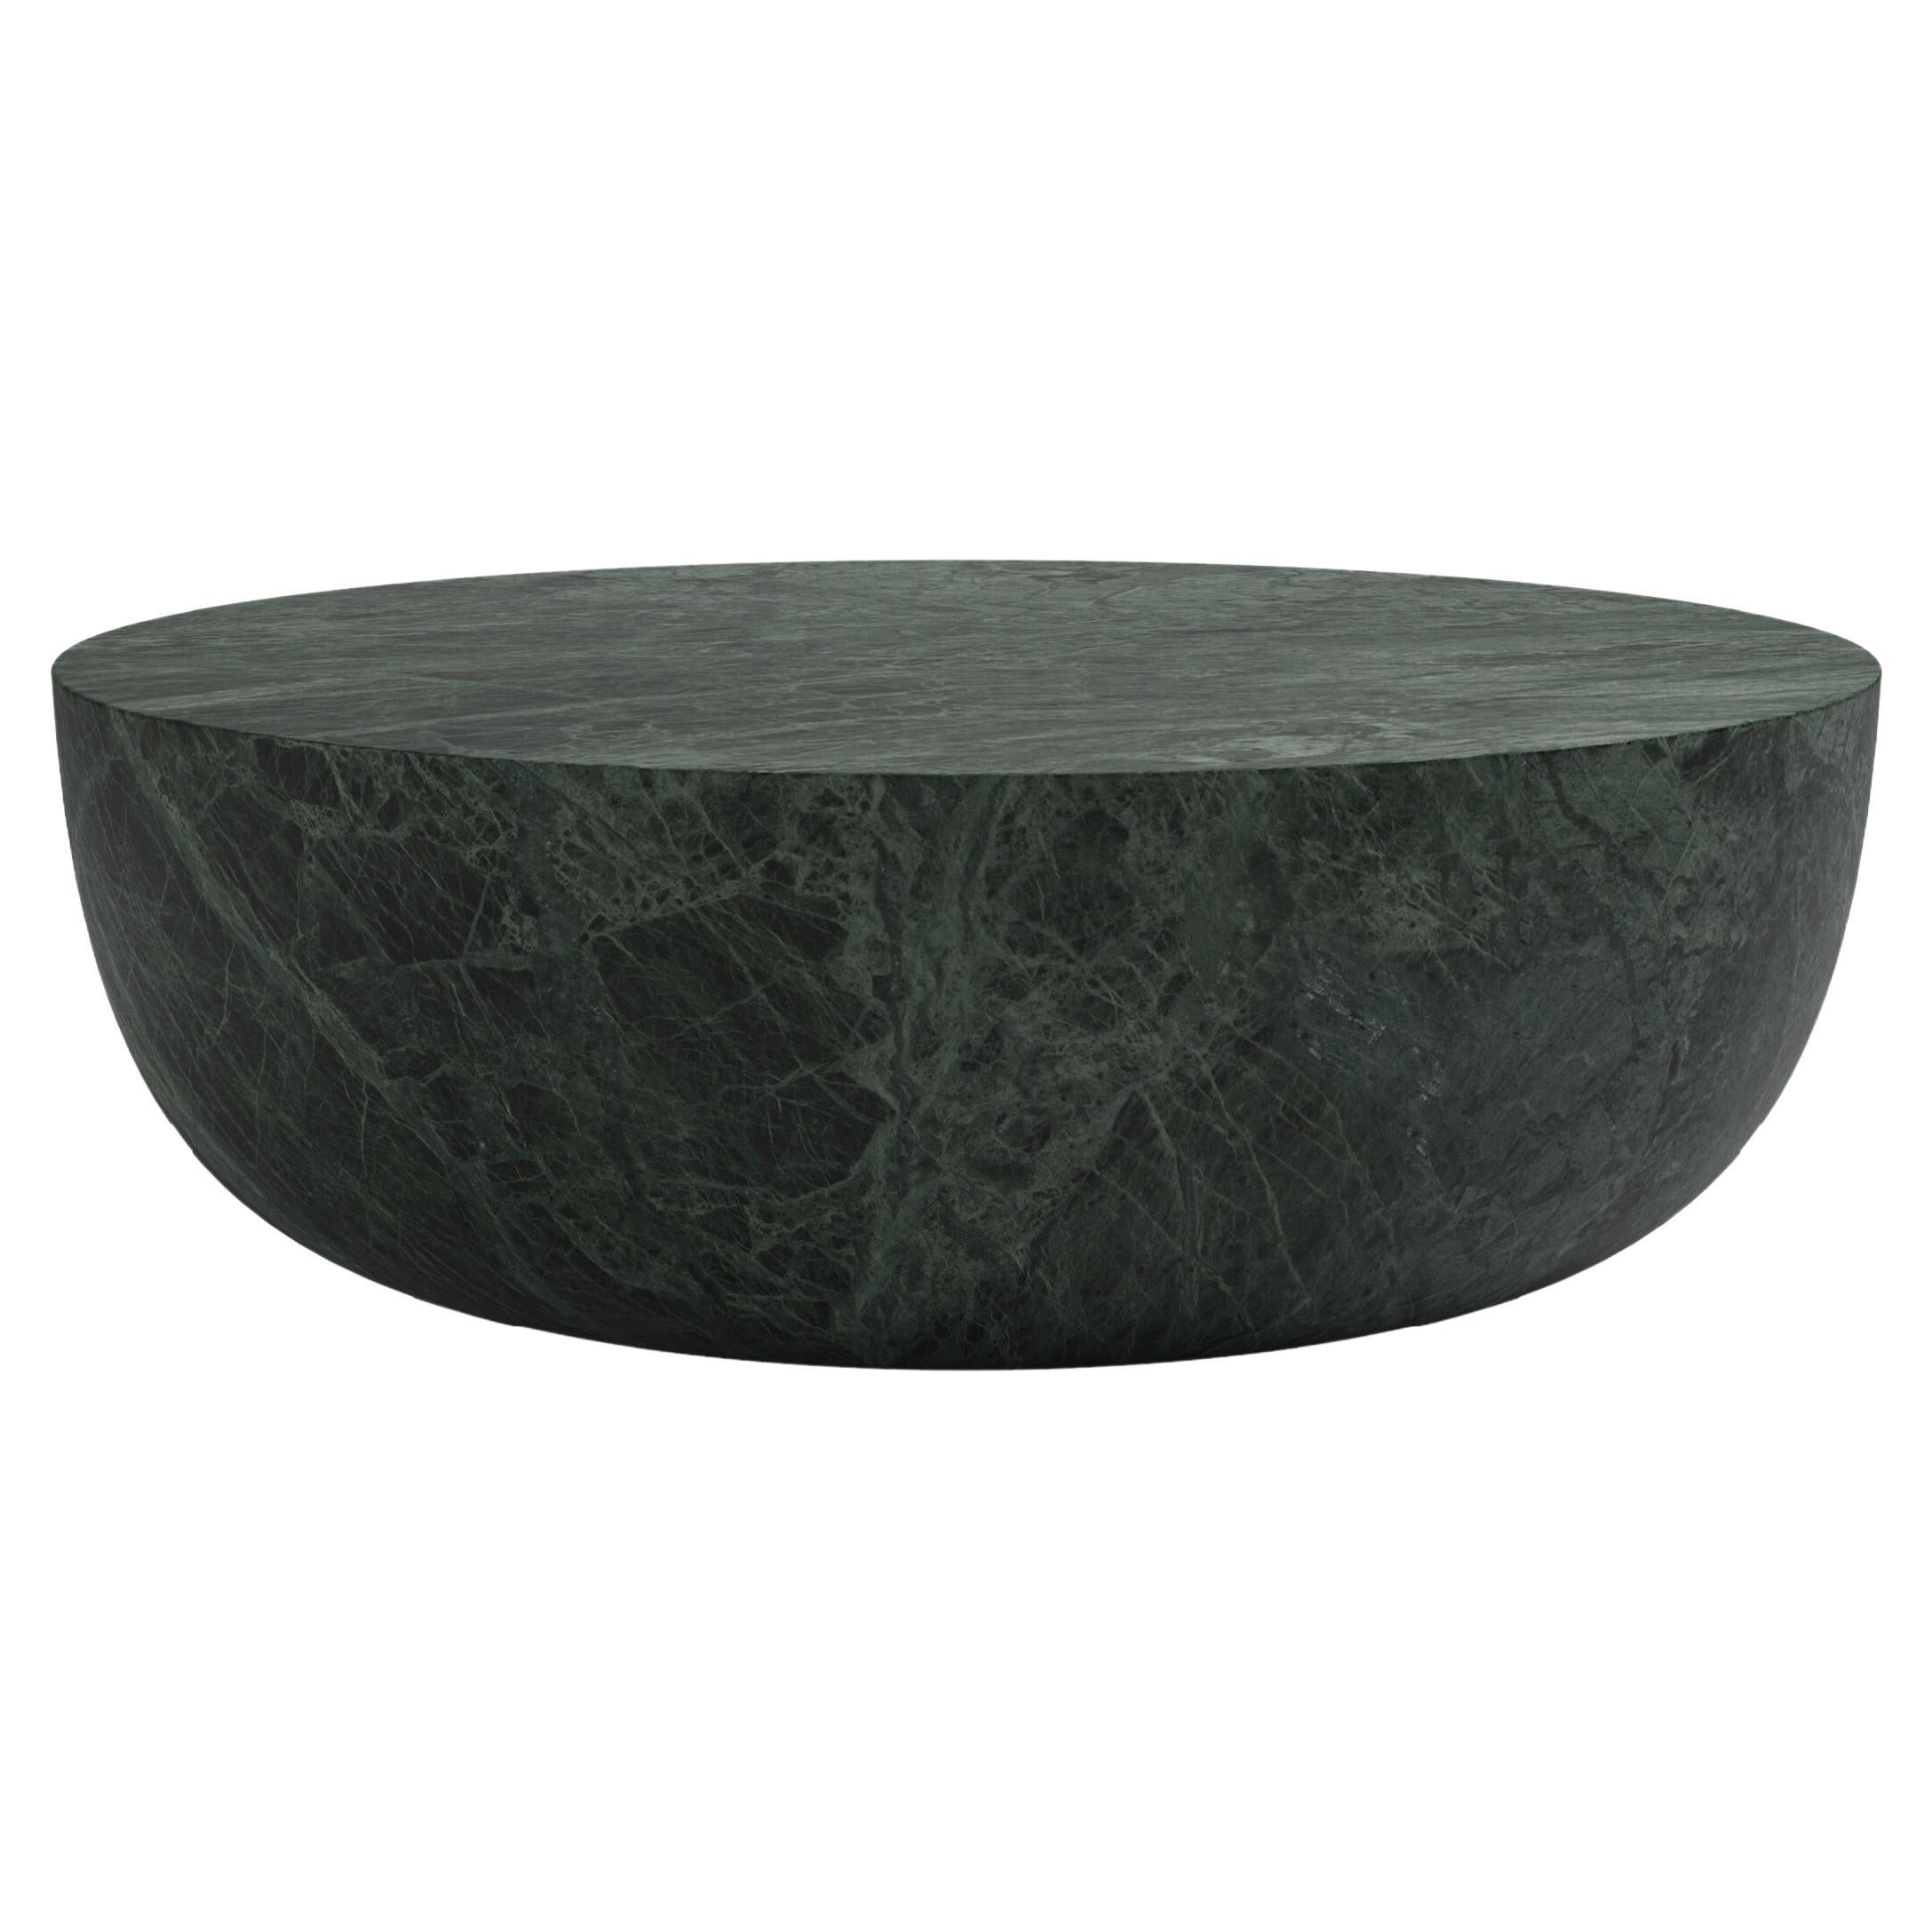 FORM(LA) Sfera Round Coffee Table 42”L x 42”W x 16”H Verde Guatemala Marble For Sale